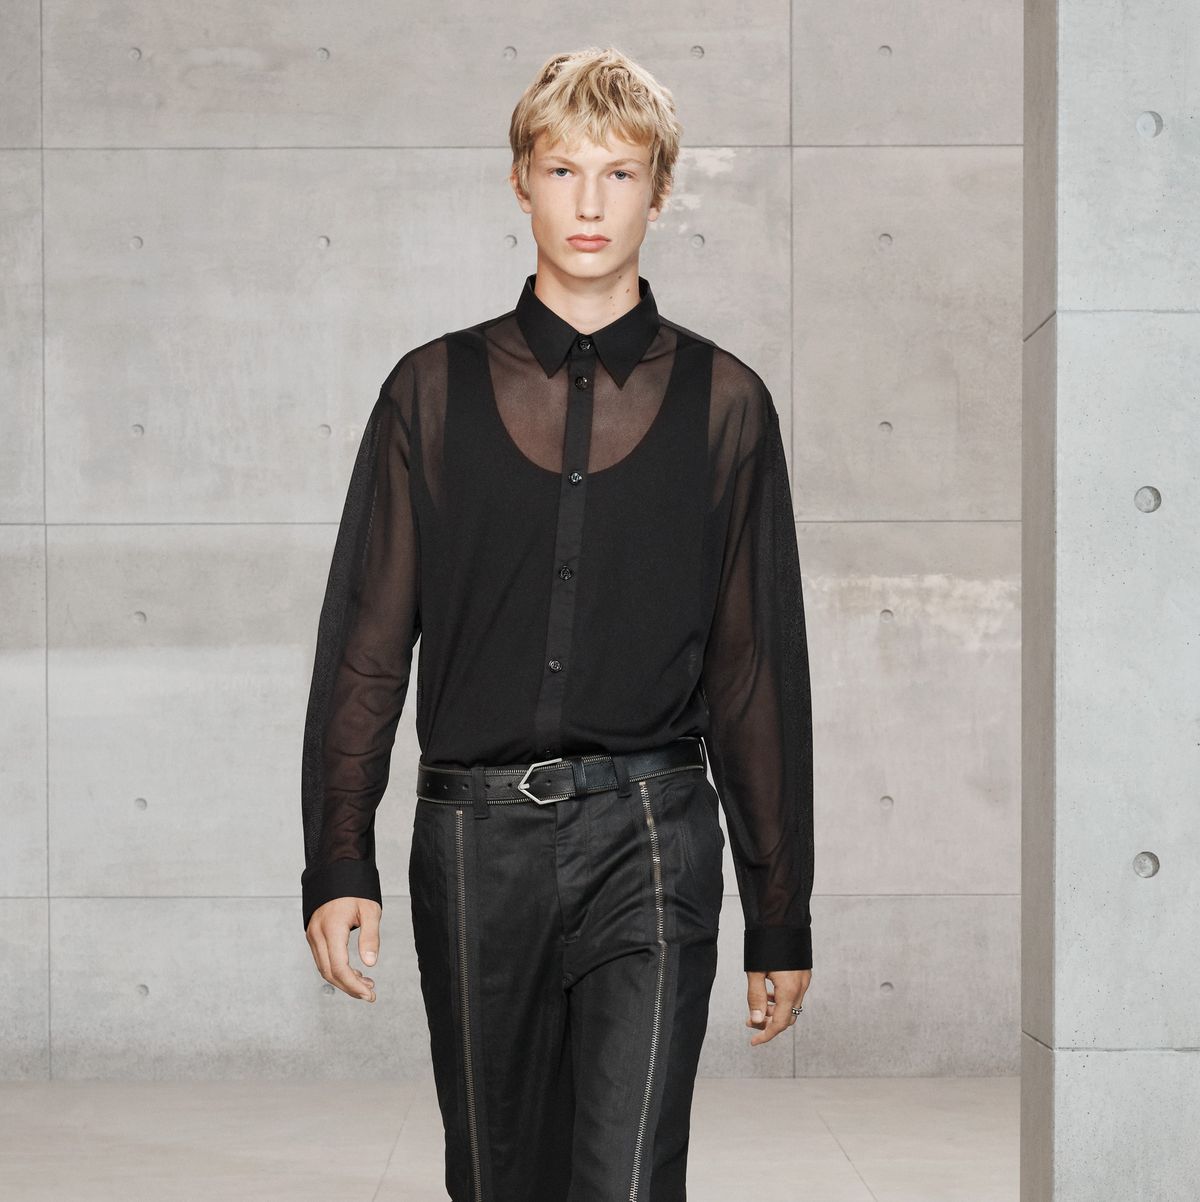 Autenticación Seguir Londres Zara SRPLS hombre: ficha la camisa negra con transparencias